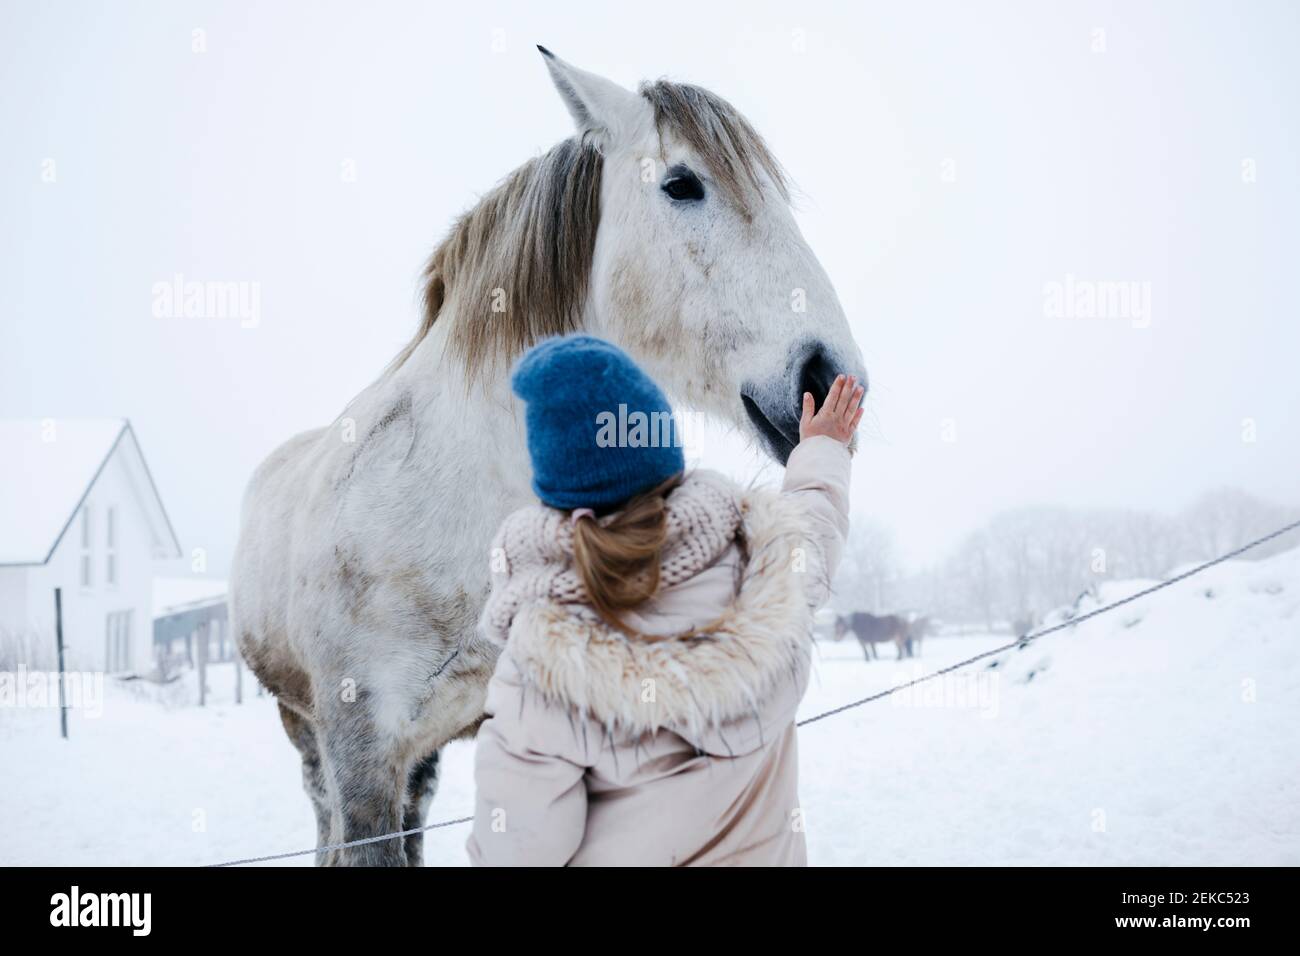 Fille dans des vêtements chauds de course de cheval sur la neige pendant l'hiver Banque D'Images